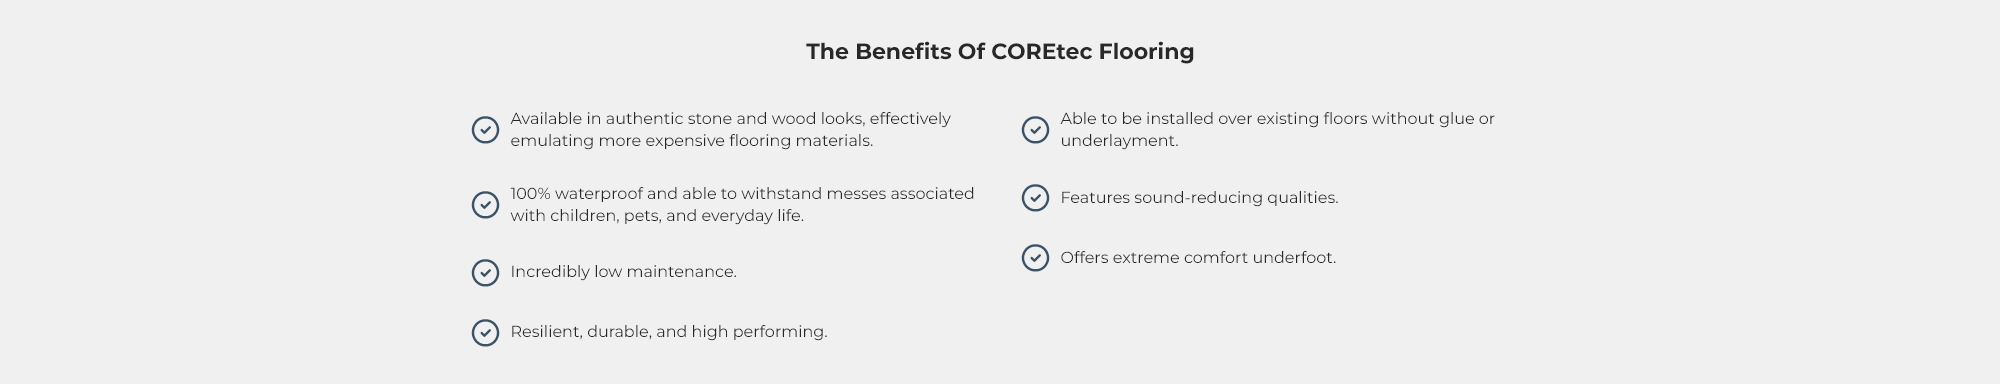 The Benefits Of COREtec Flooring